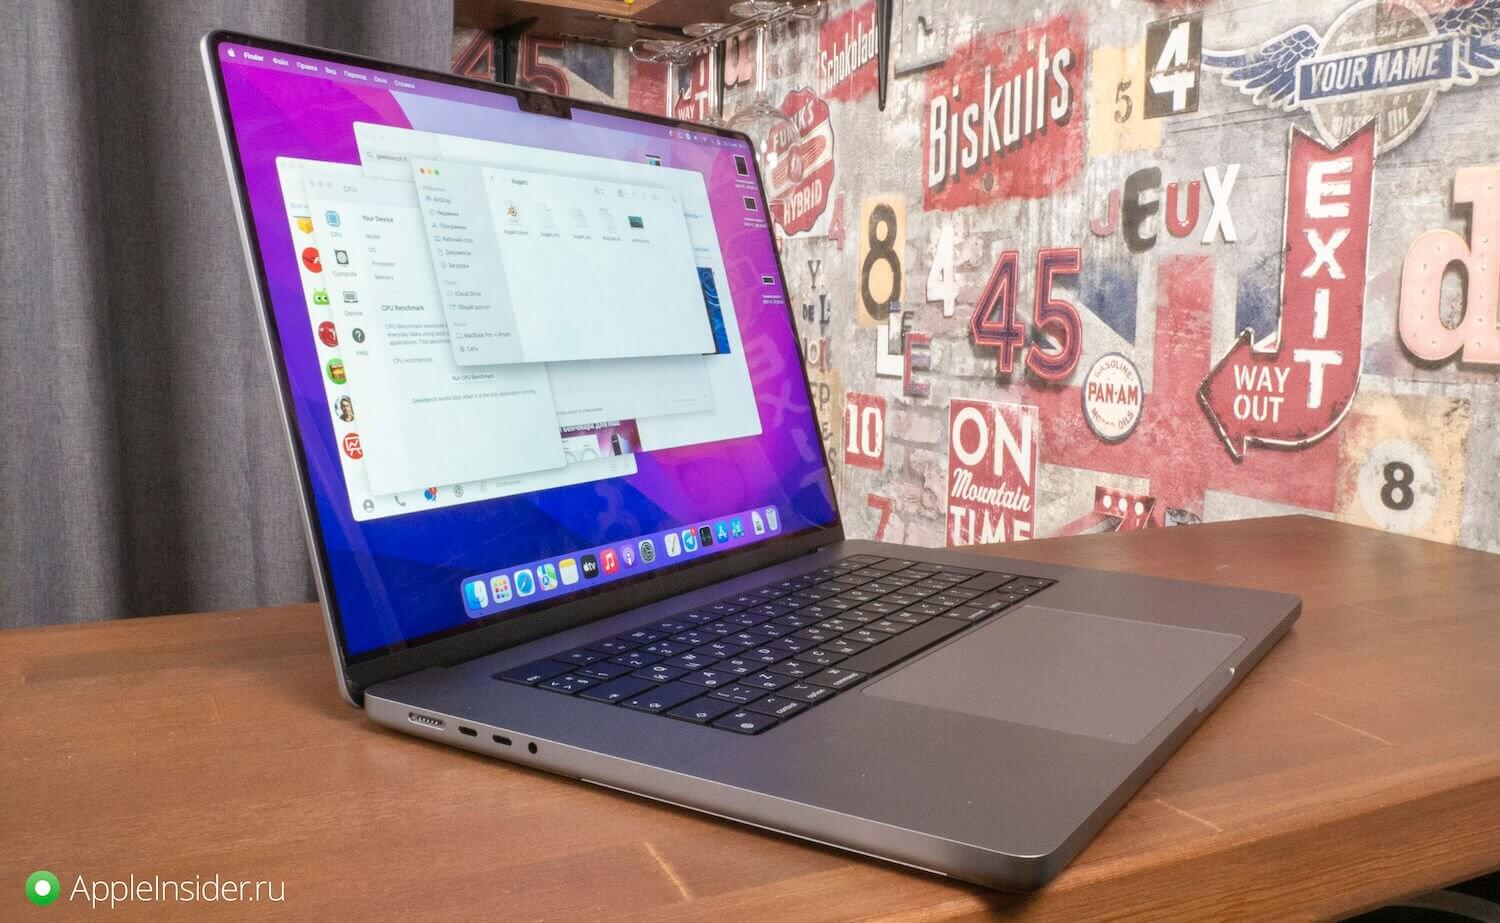 Ремонт, замена клавиатуры MacBook после залития в Apple Pro Москва